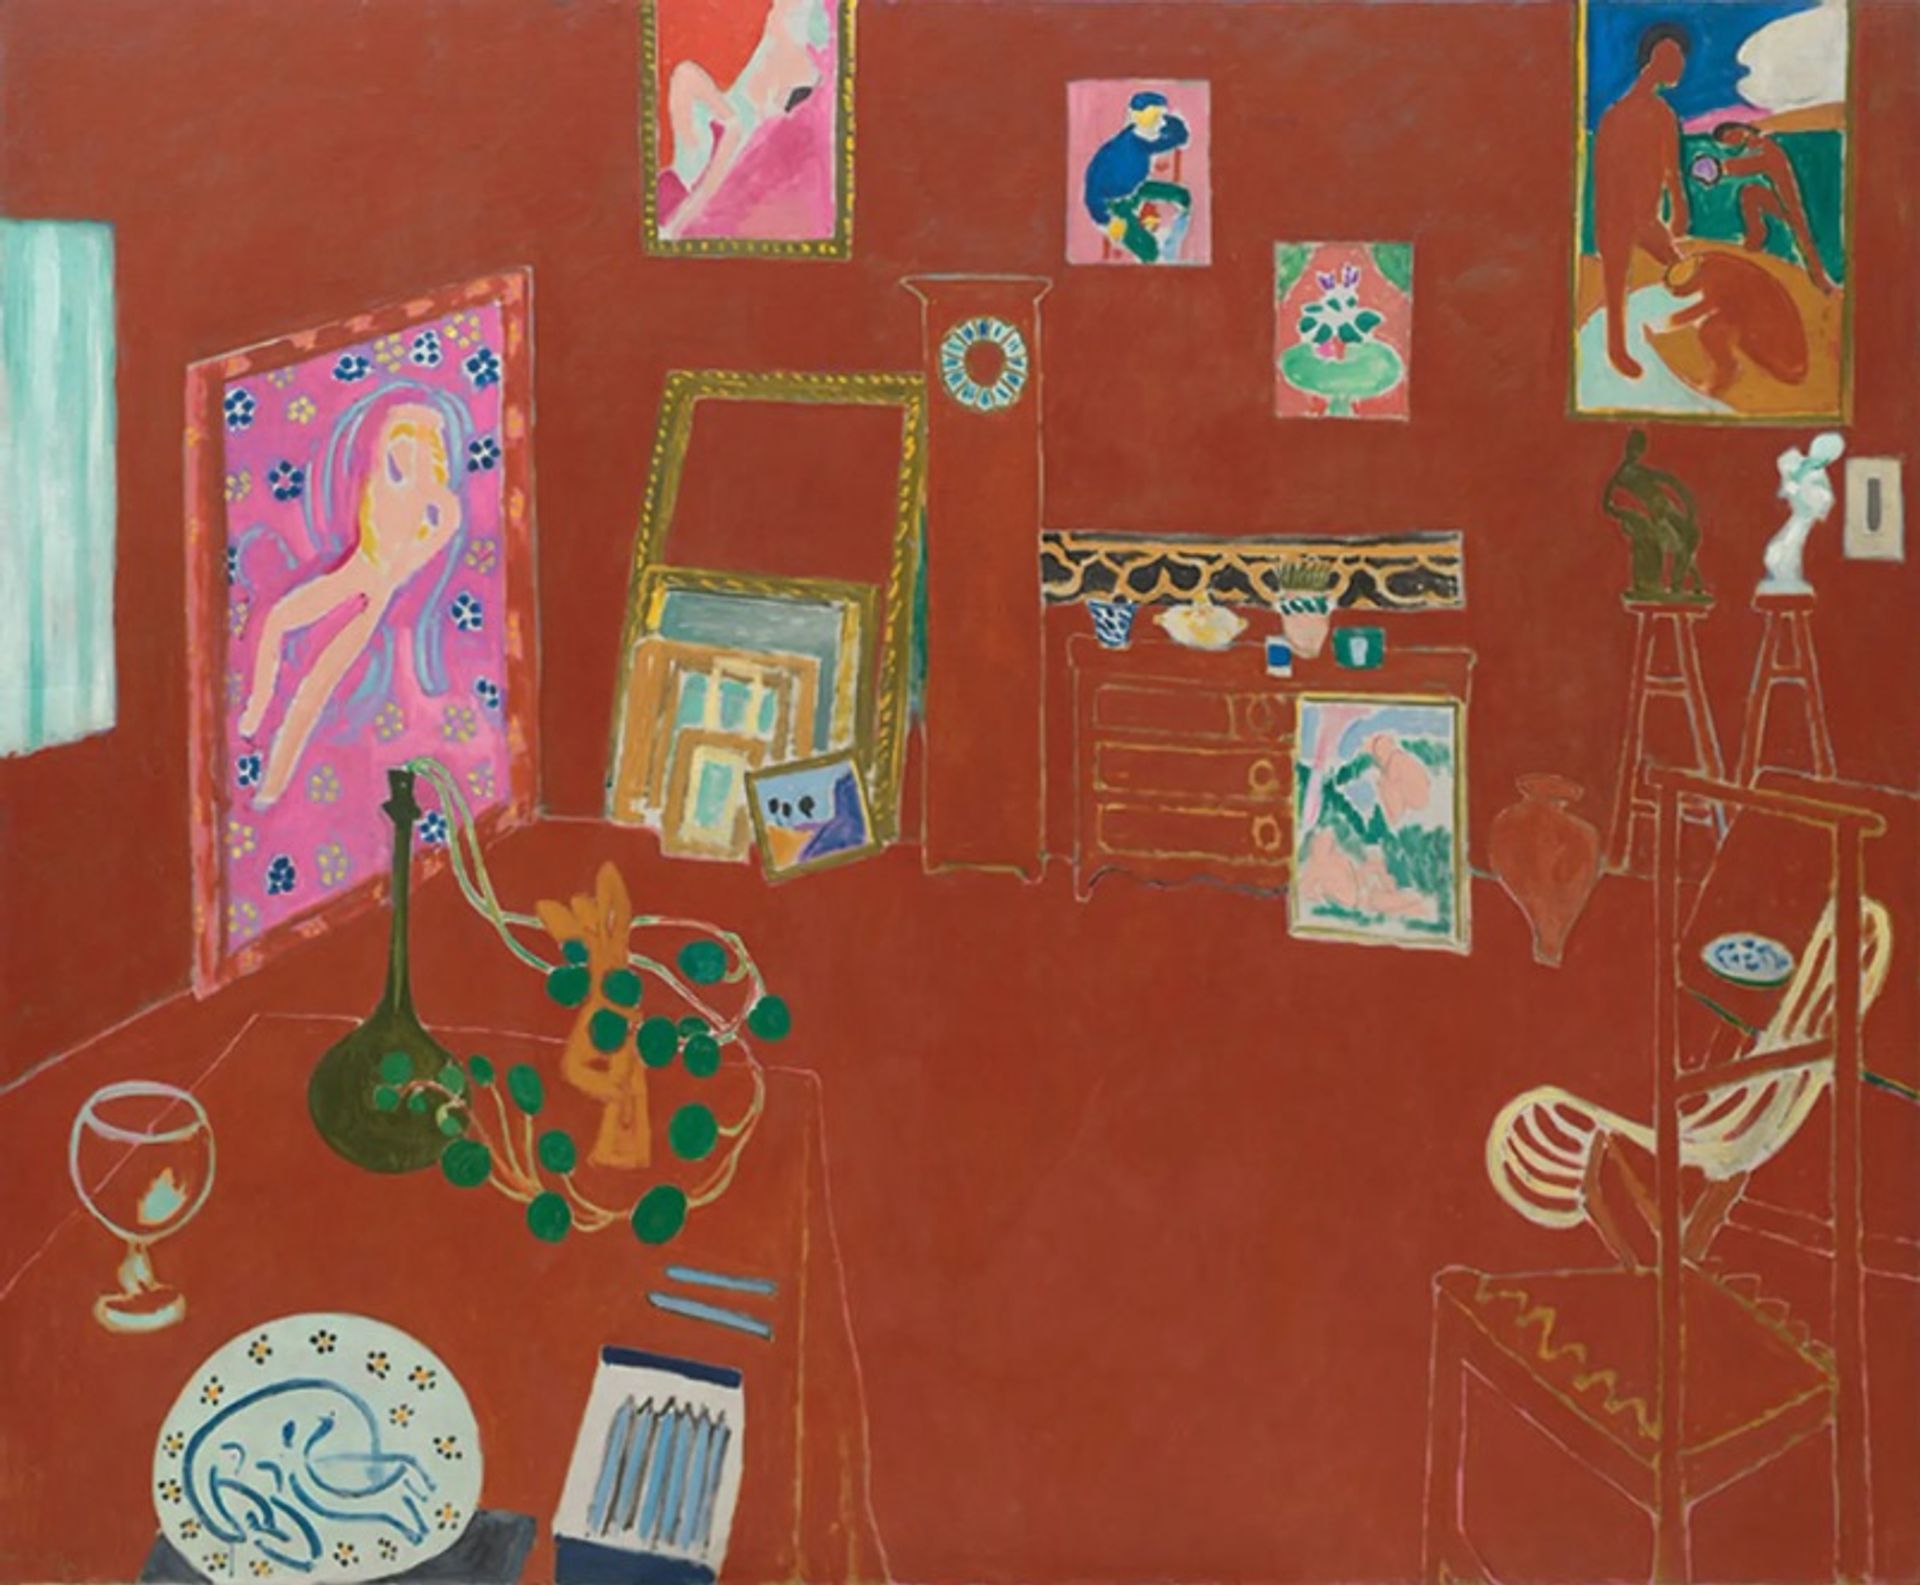 'הסטודיו האדום' של מאטיס (1911) כולל בתוכו ציורים כמו 'מתרחצים' (1907), 'עירום עם צעיף לבן' (1909) ואת פסל הברונזה 'דמות דקורטיבית' (1908)

© 2022 Succession H. Matisse/ARS